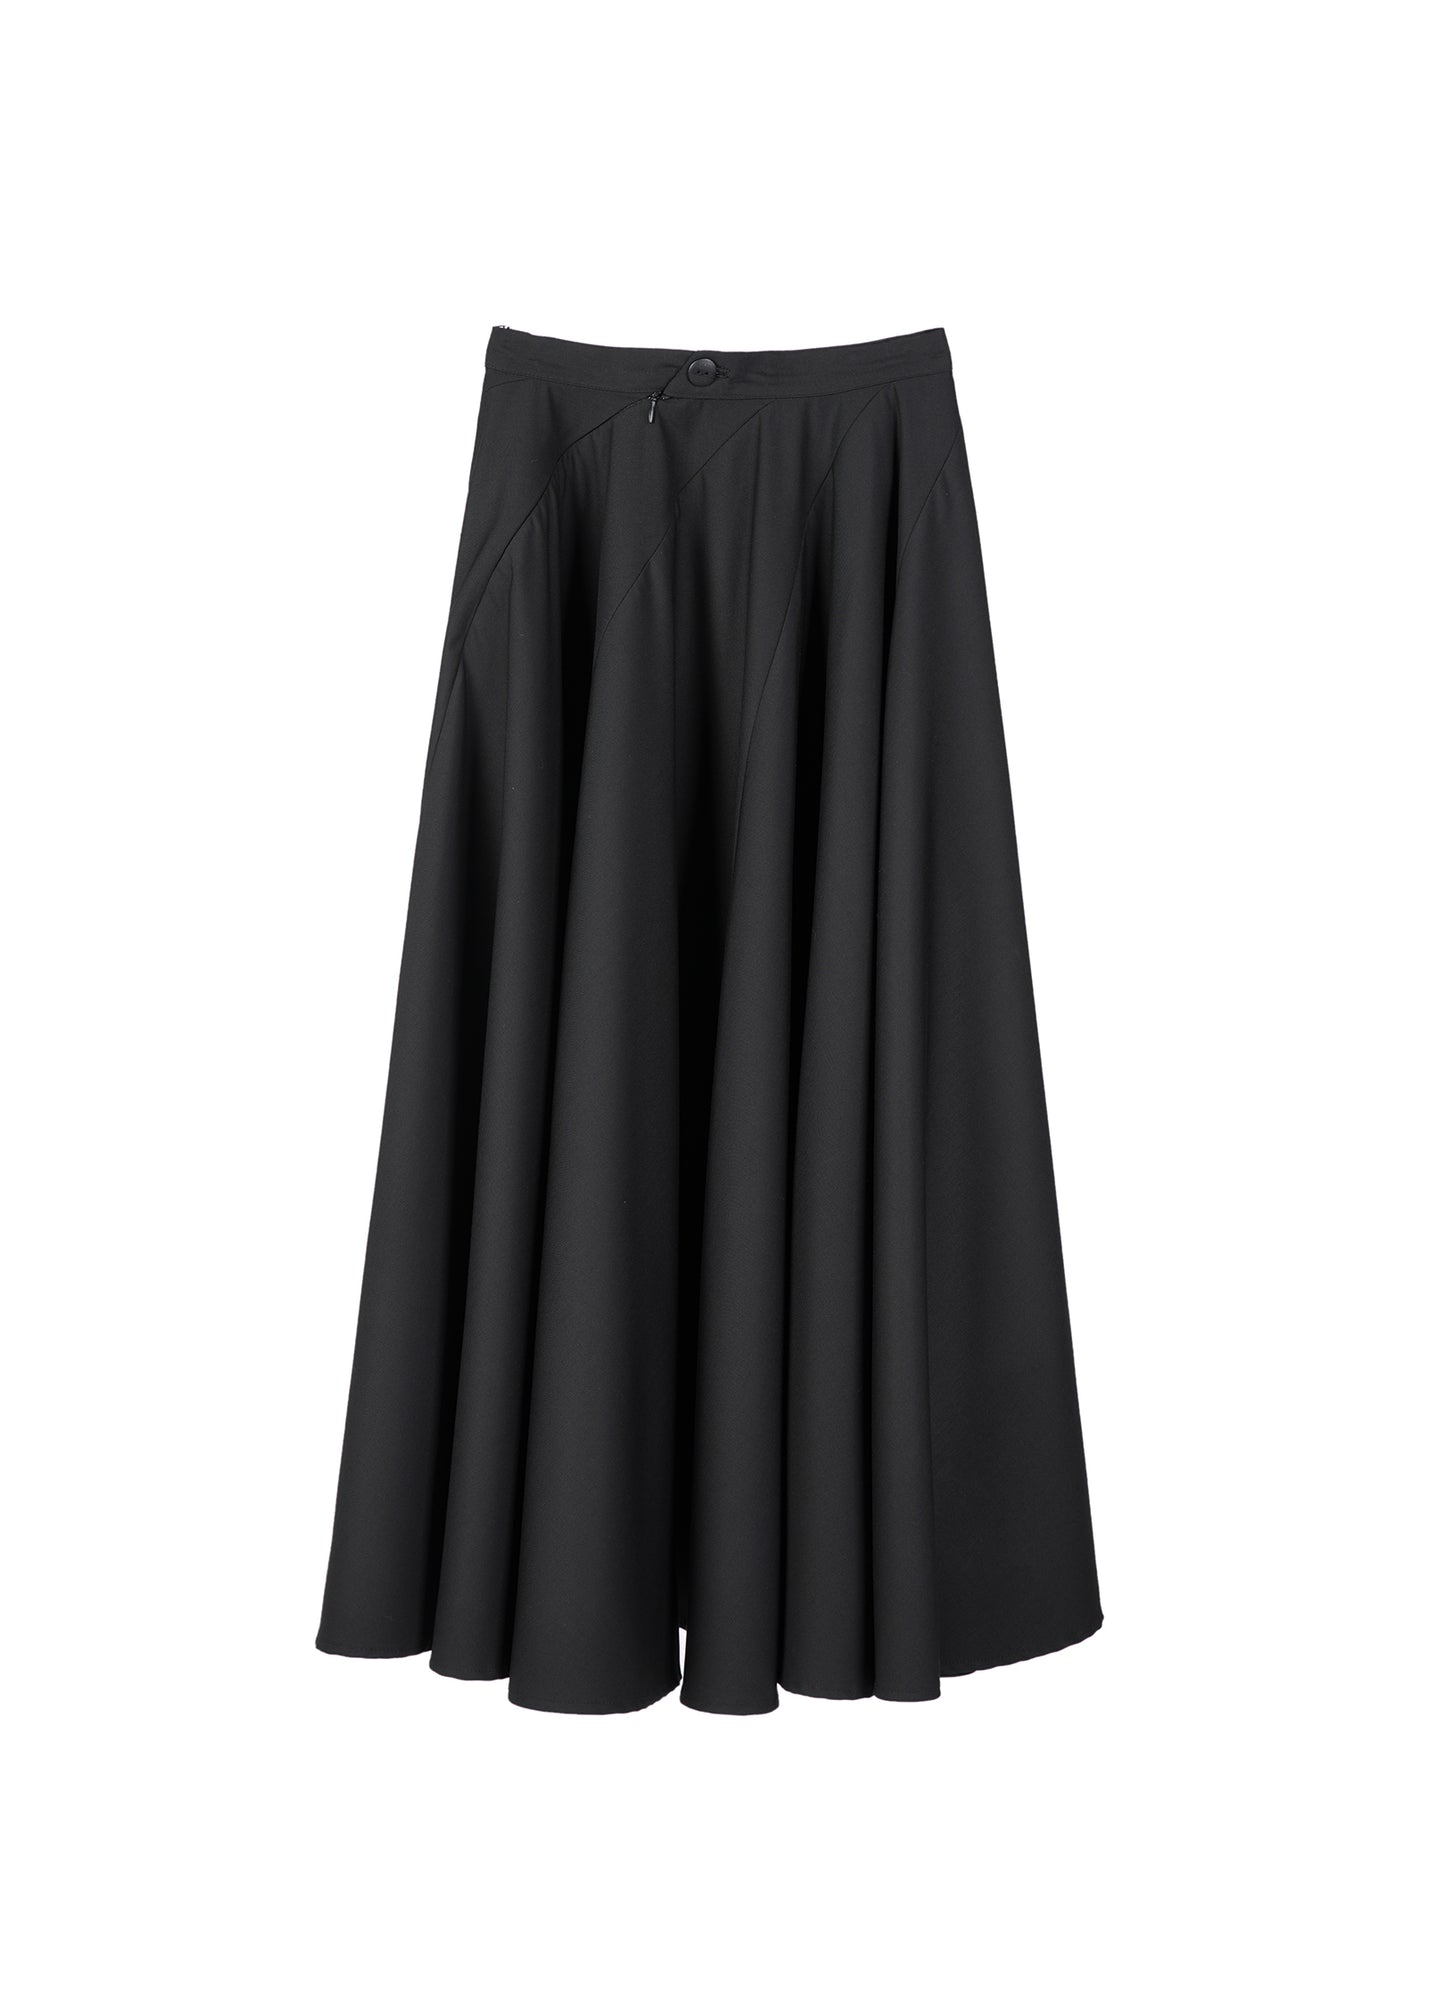 Light A-line Skirt